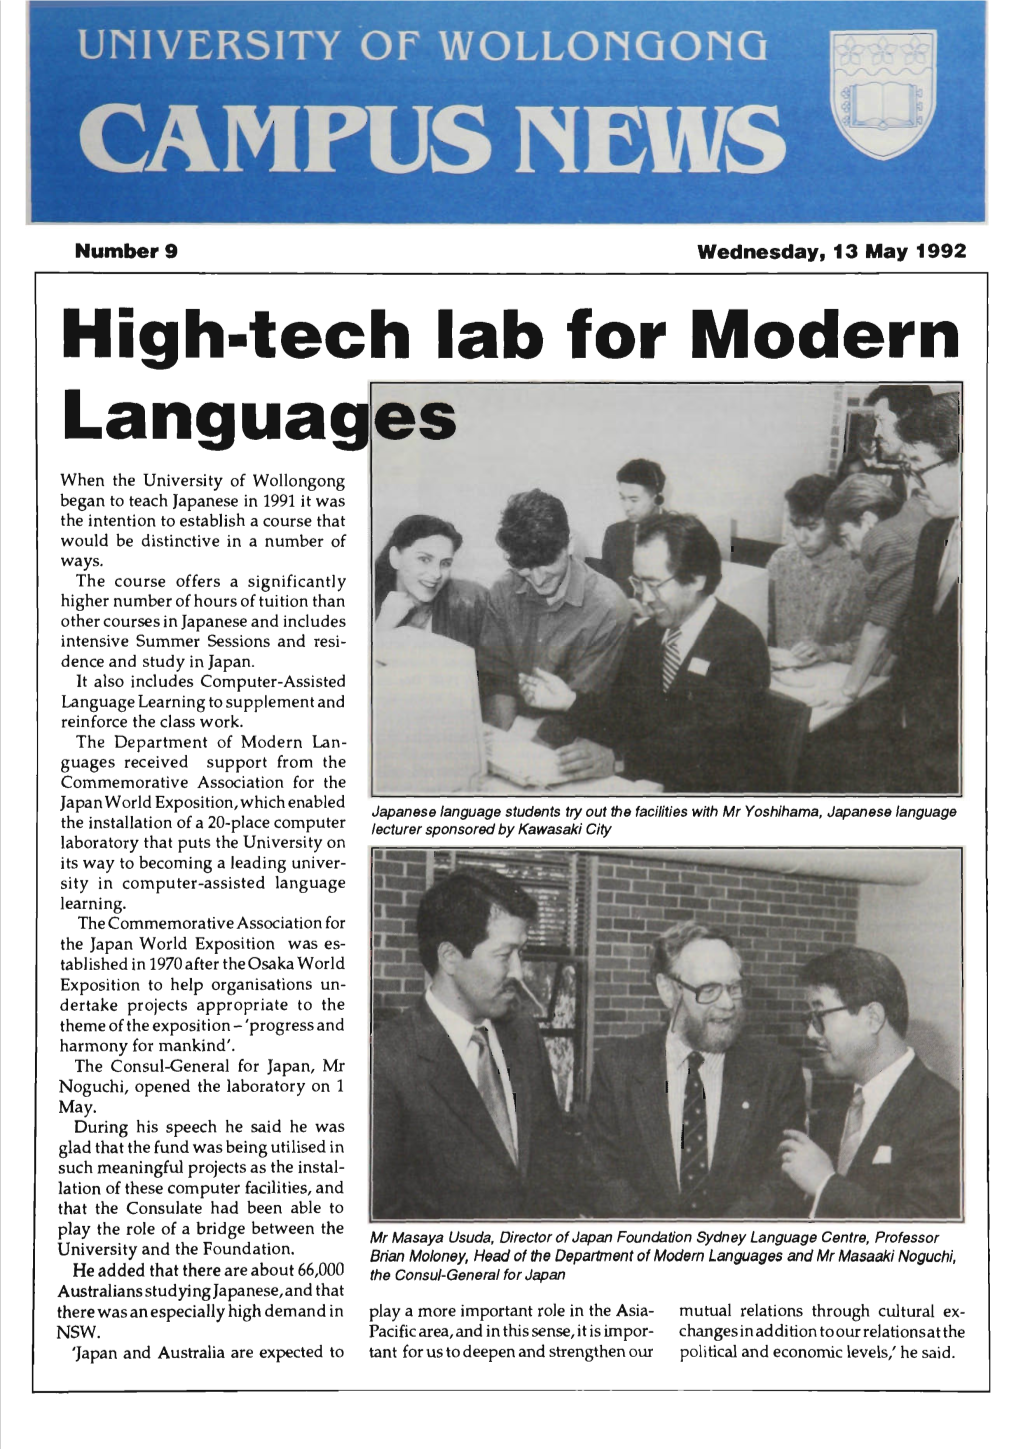 University of Wollongong Campus News 13 May 1992